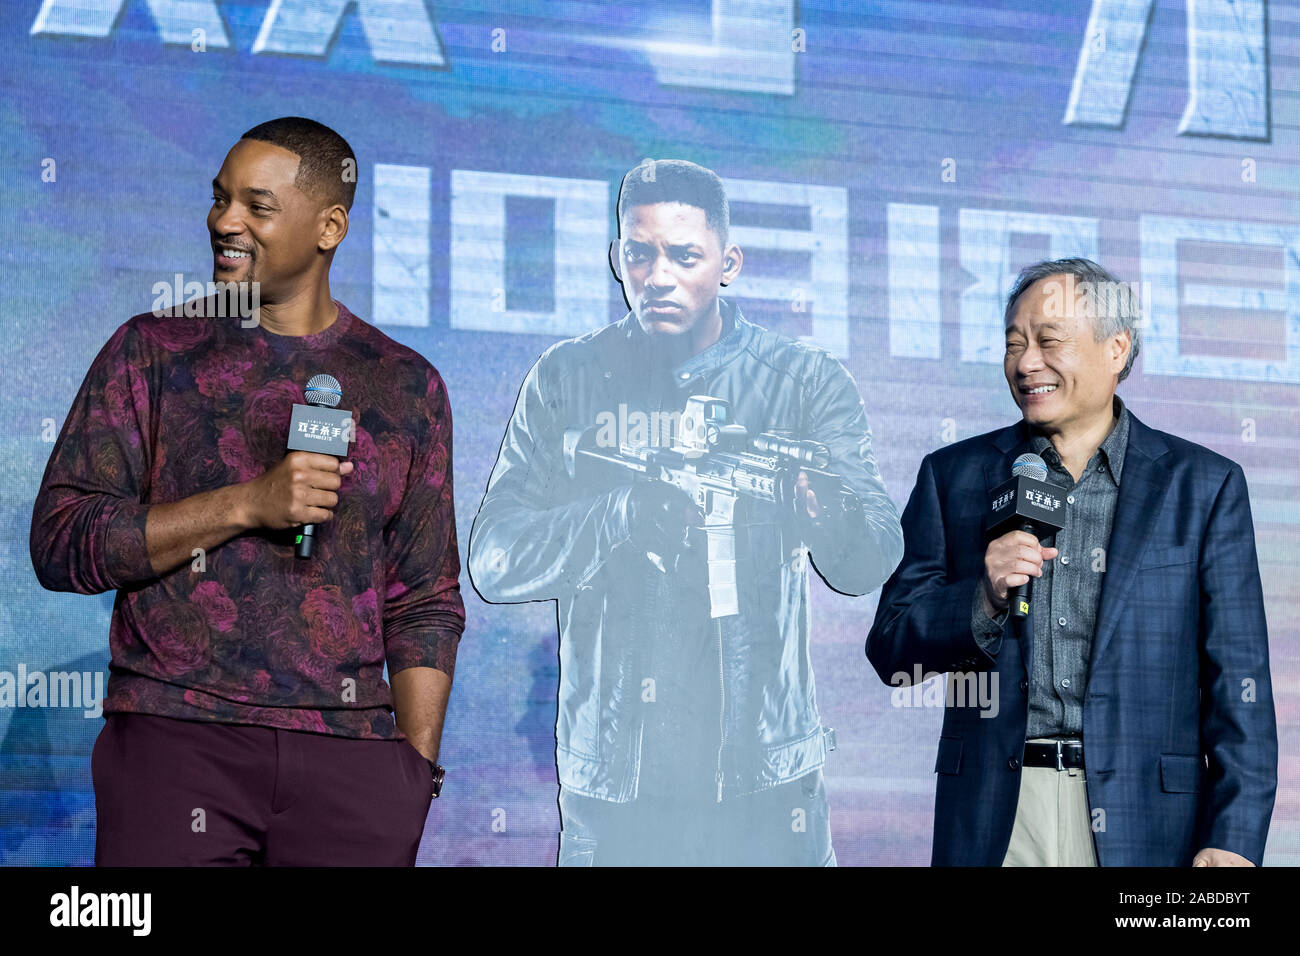 Will Smith, Links, und der taiwanesische Regisseur Ang Lee sprechen bei Movie release Konferenz der "Gemini Man" in Shanghai, China, 14. Oktober 2019. Stockfoto